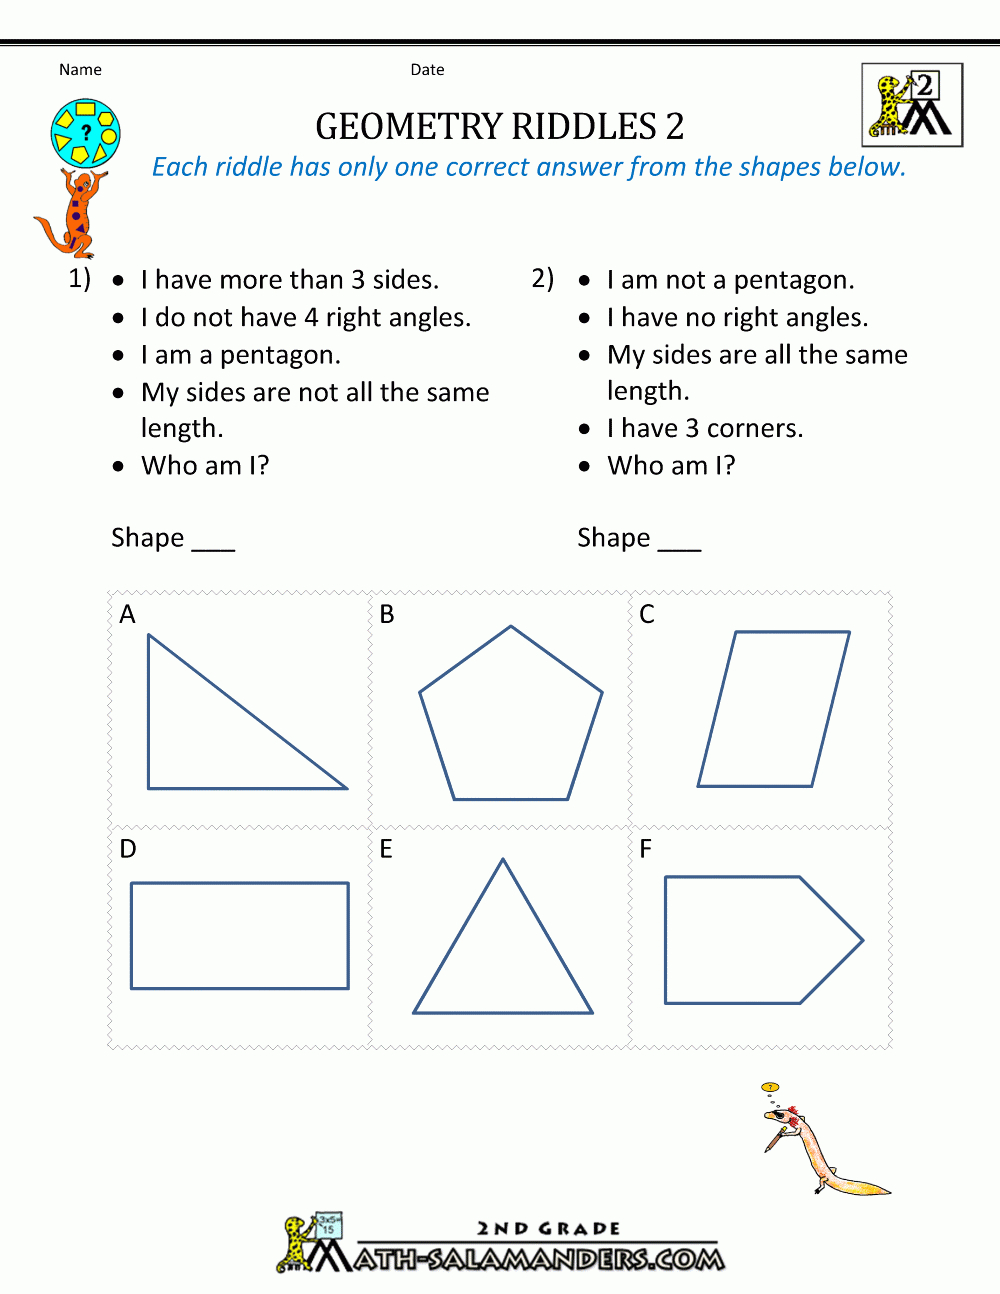 Free Geometry Worksheets 2Nd Grade Geometry Riddles - Free Printable Geometry Worksheets For 3Rd Grade